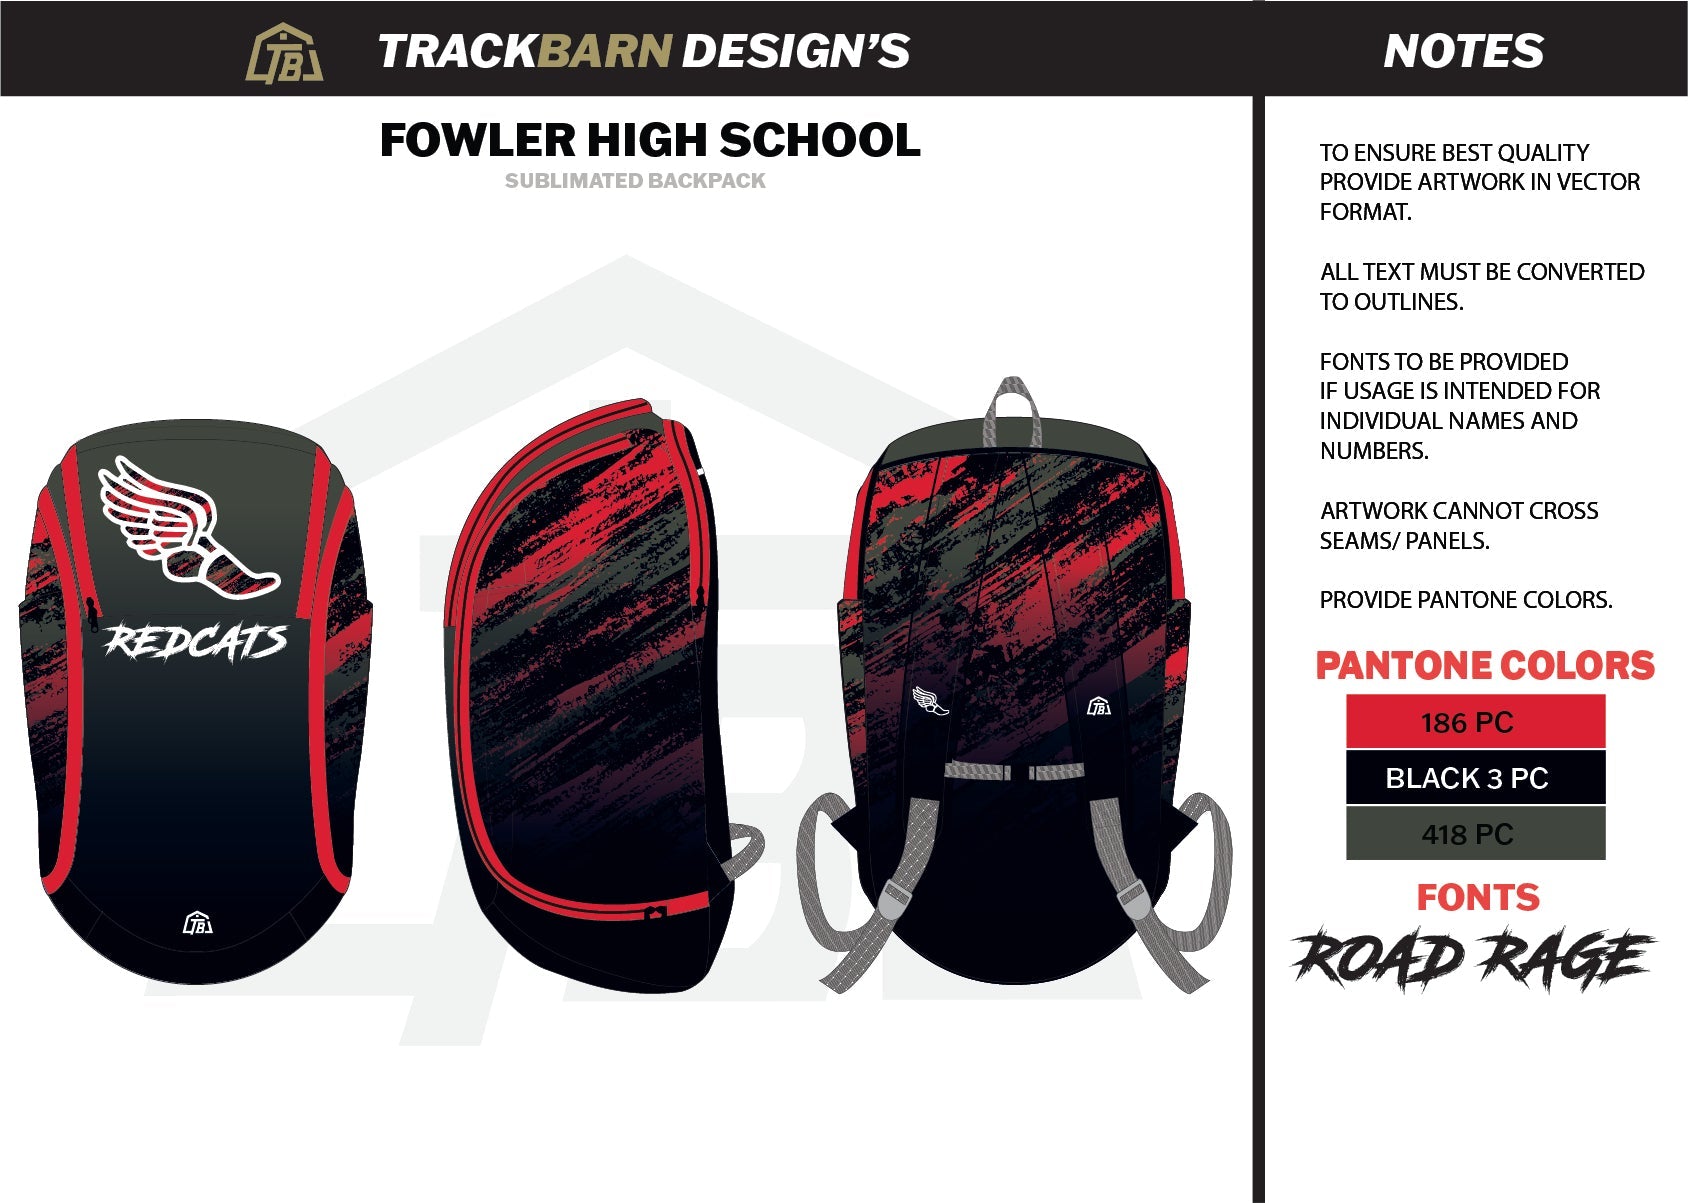 Fowler-High-School Backpack